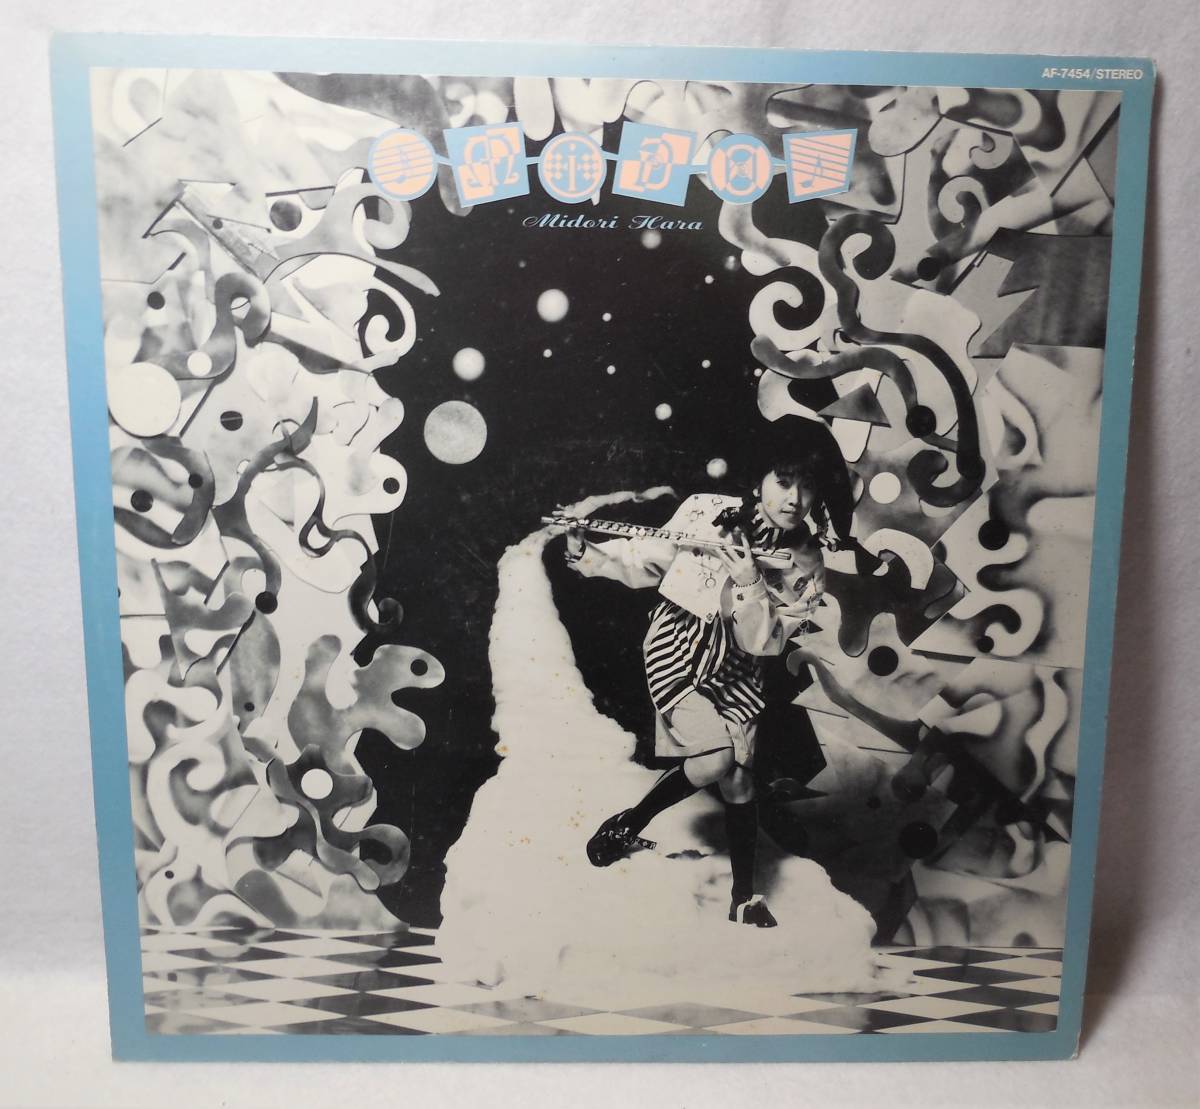 原みどり「MiDo」見本盤 LPレコード AF7454 日本コロムビア オリジナル盤の画像1